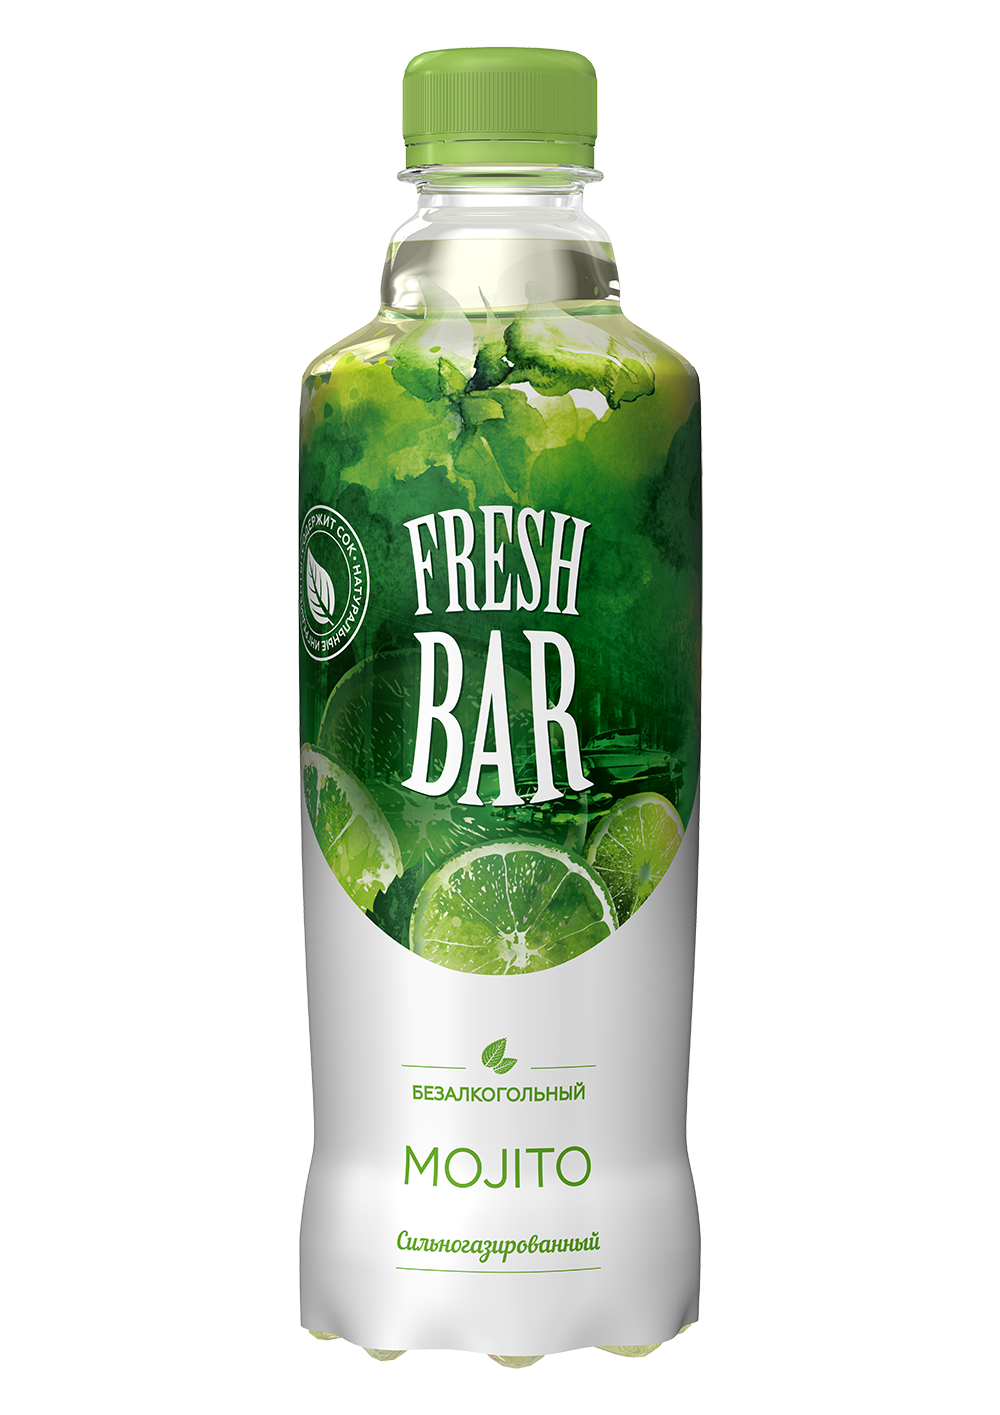 Напиток флеш бар. Fresh Bar напиток 1.5 л. Напиток Fresh Bar Mojito. Фреш бар Мохито 0.48. Фреш бар напиток Мохито.